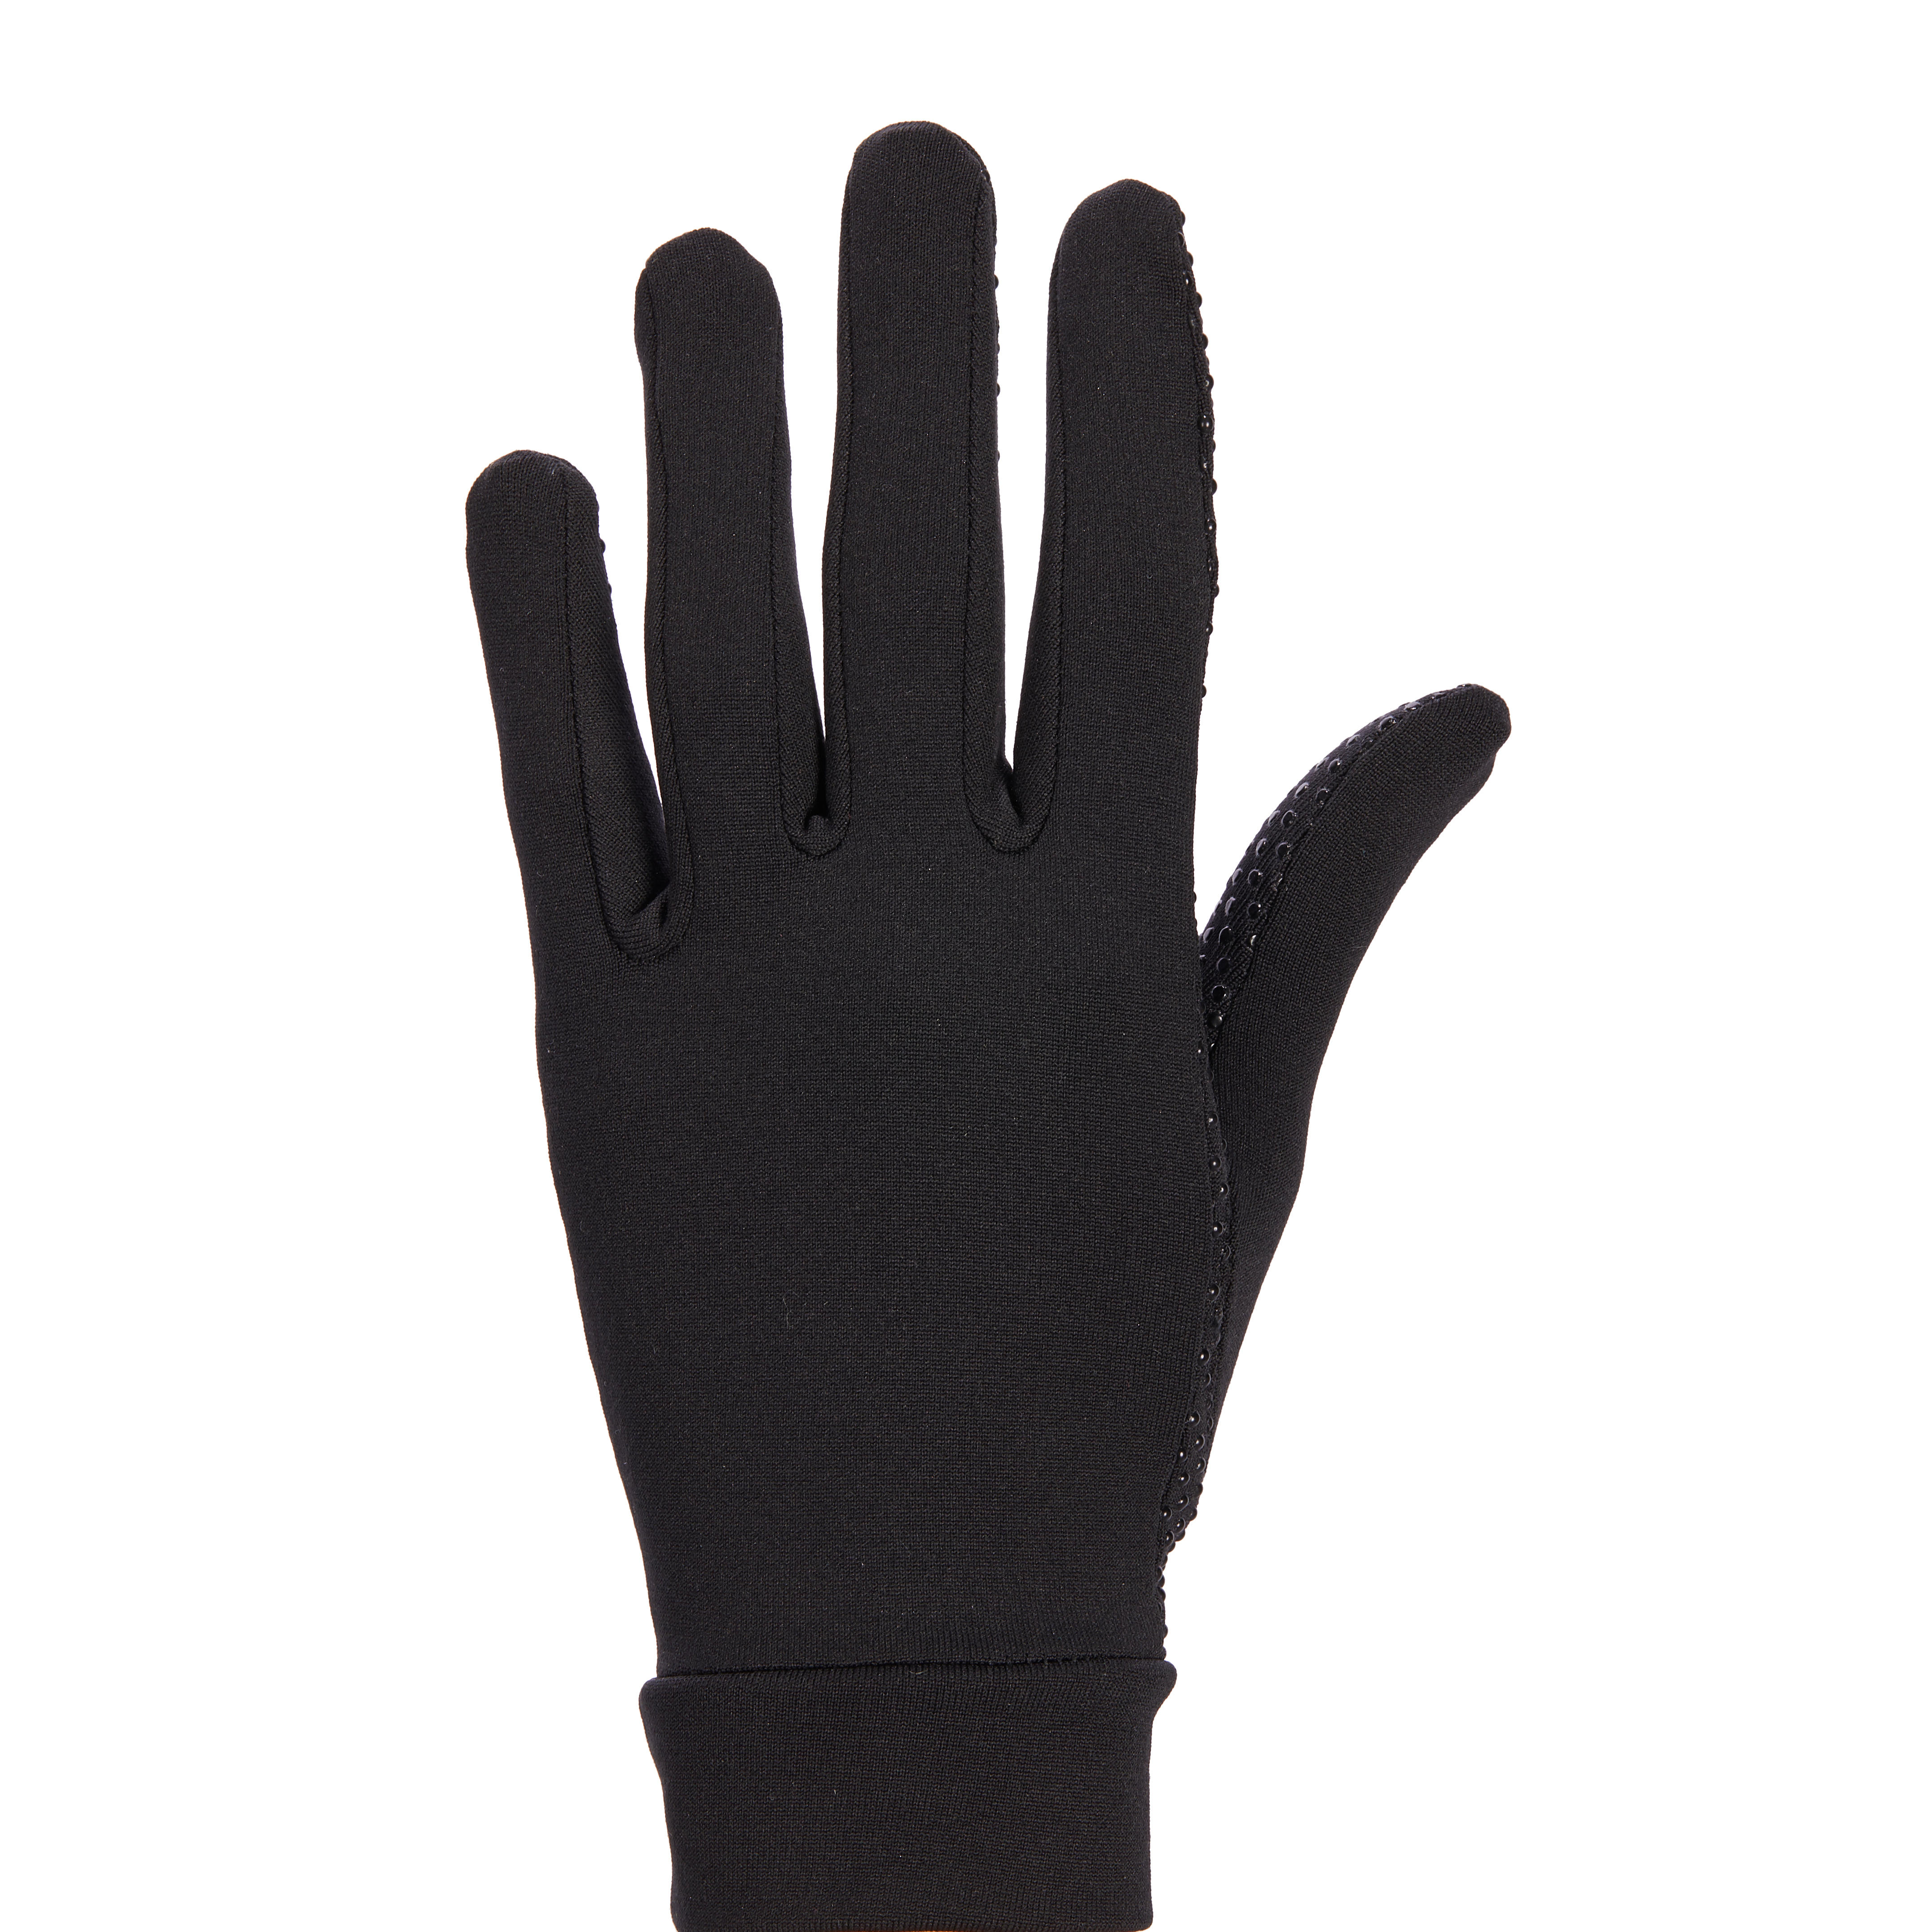 [[คุณภาพดี]] ถุงมือผู้หญิงสำหรับขี่ม้ารุ่น 140 (สีดำ)